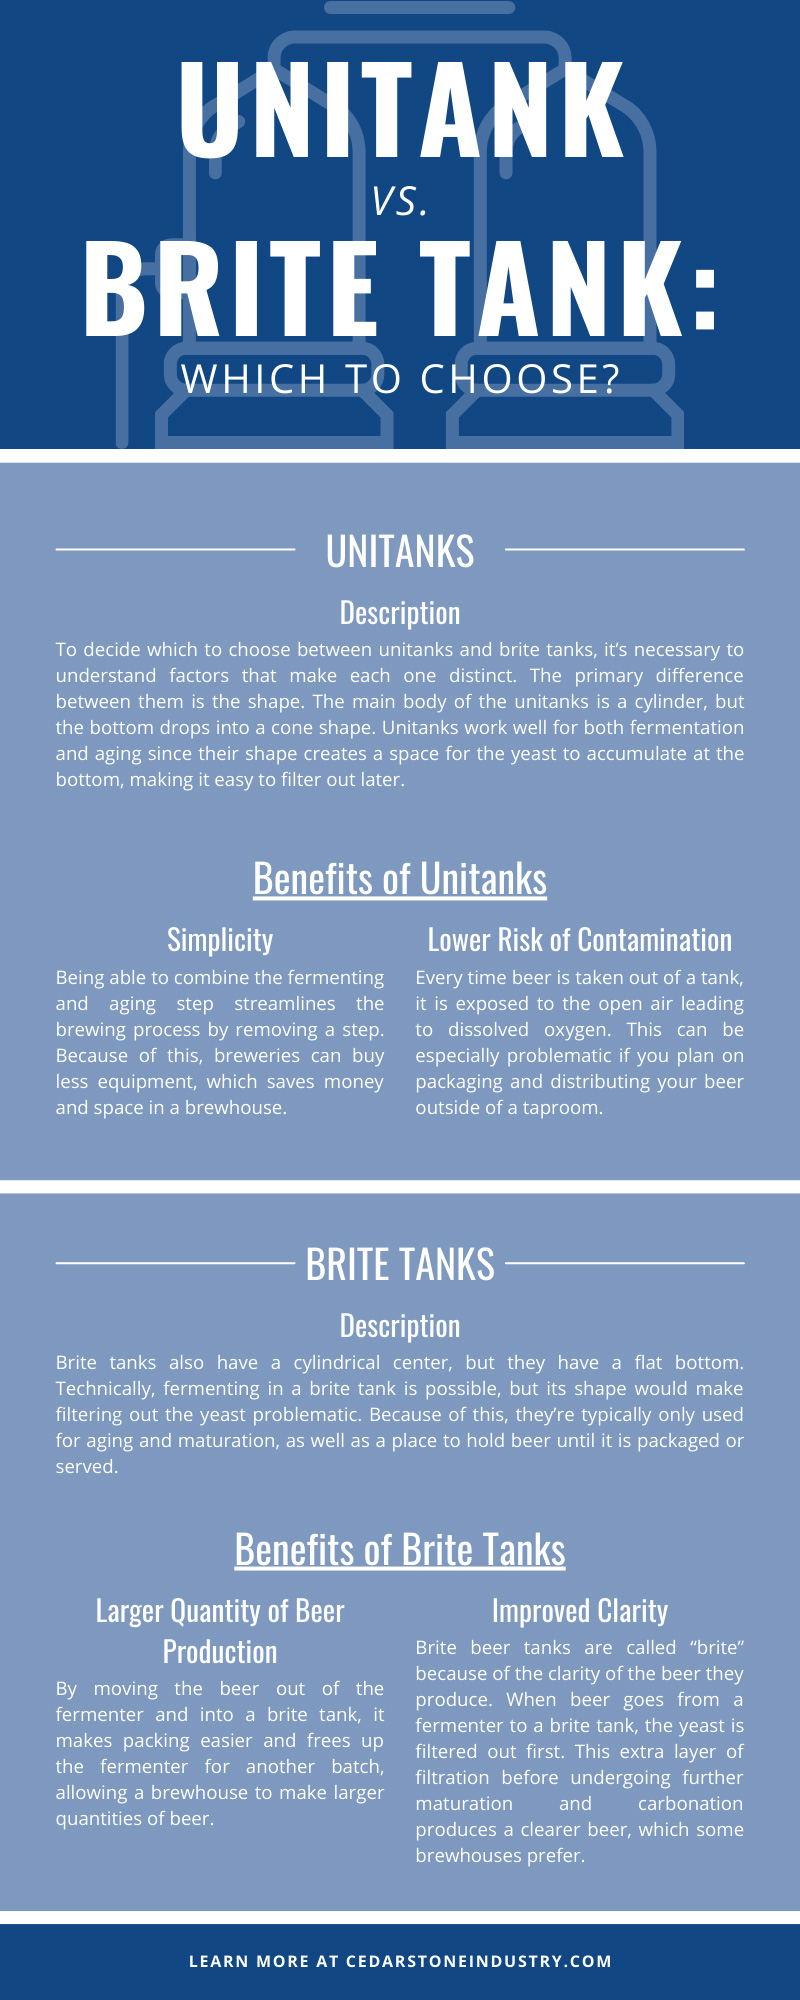 Unitank vs. Brite Tank 